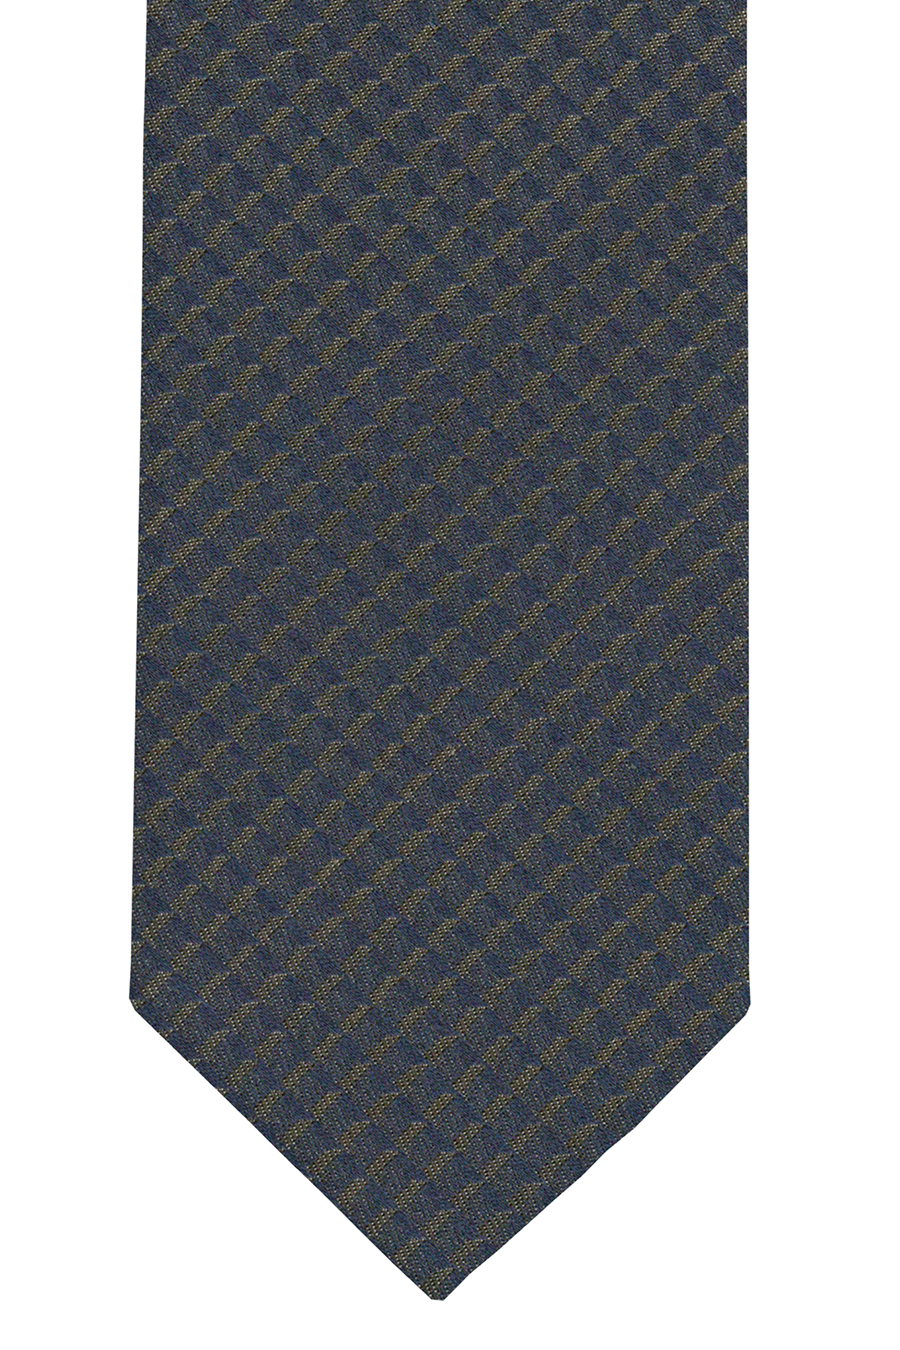 OLYMP Krawatte slim 6,5 cm breit aus reiner Seide Fleckabweisend Muster grün